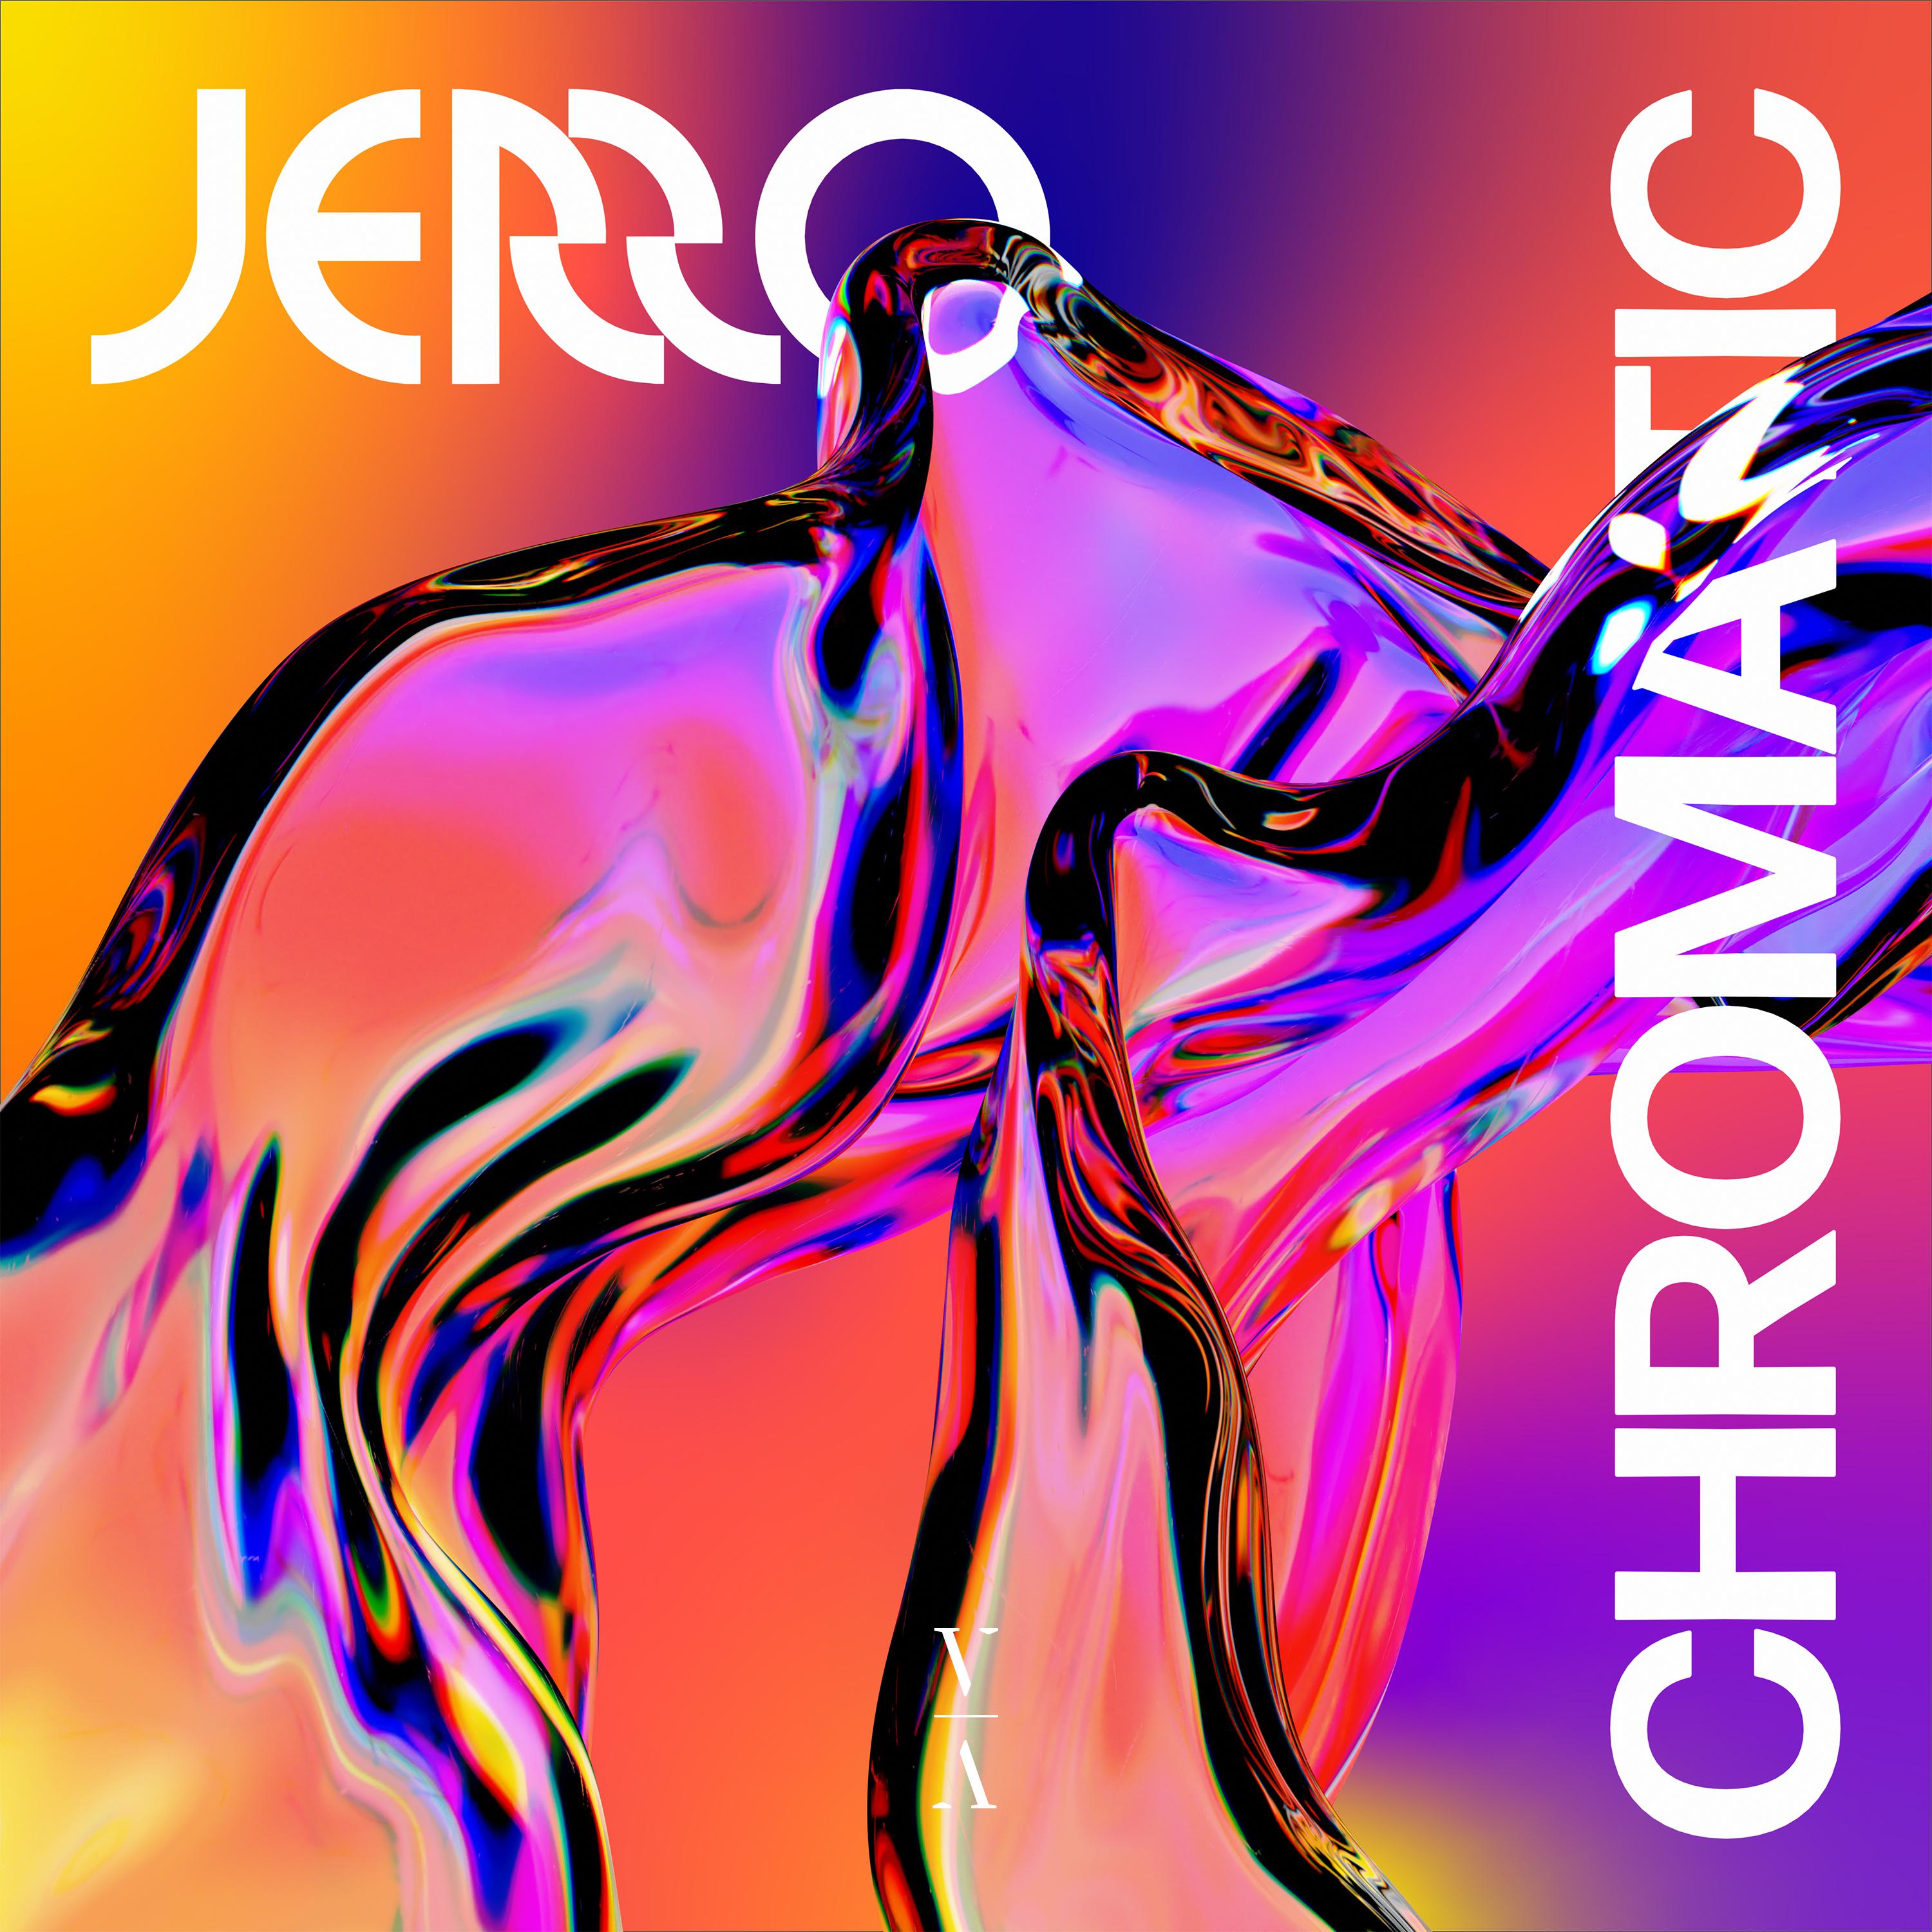 Jerro - How Does It Feel